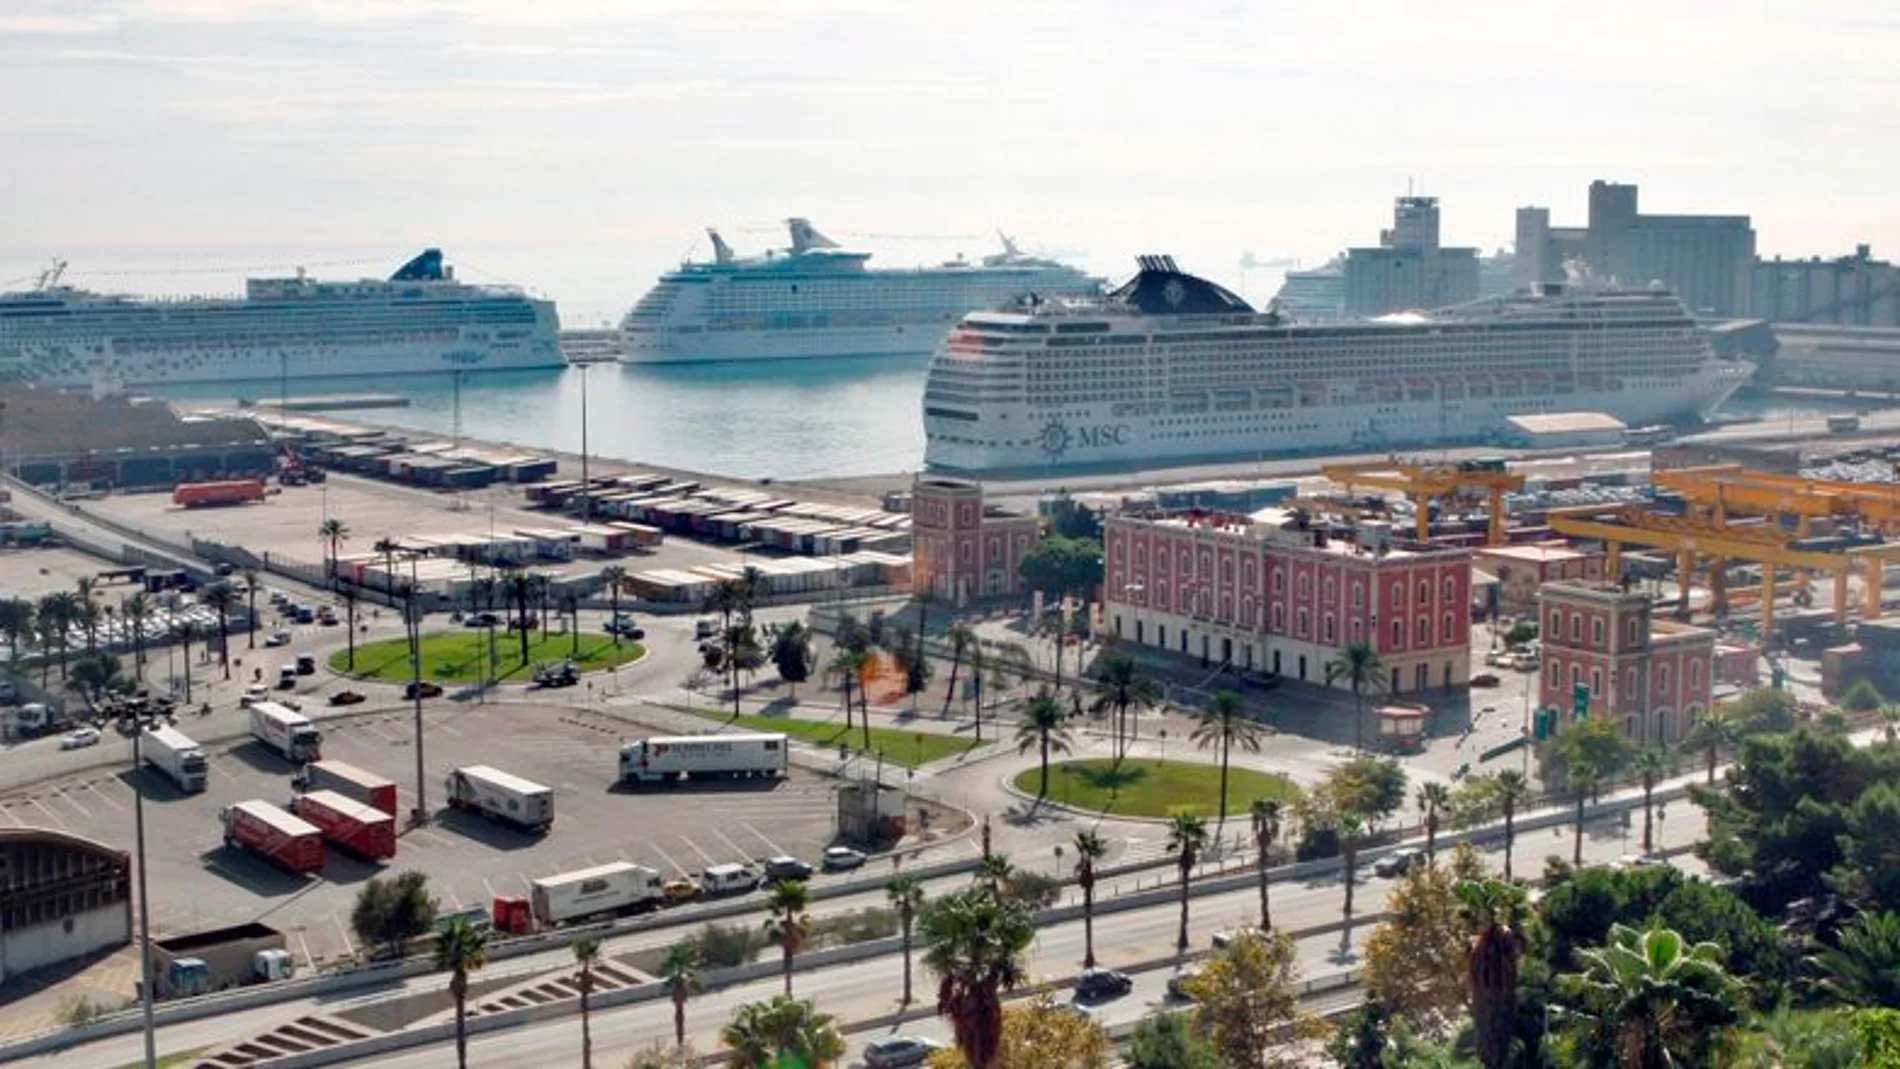 Premonición moco pozo La huelga de transportistas bloquea la entrada al puerto de Barcelona